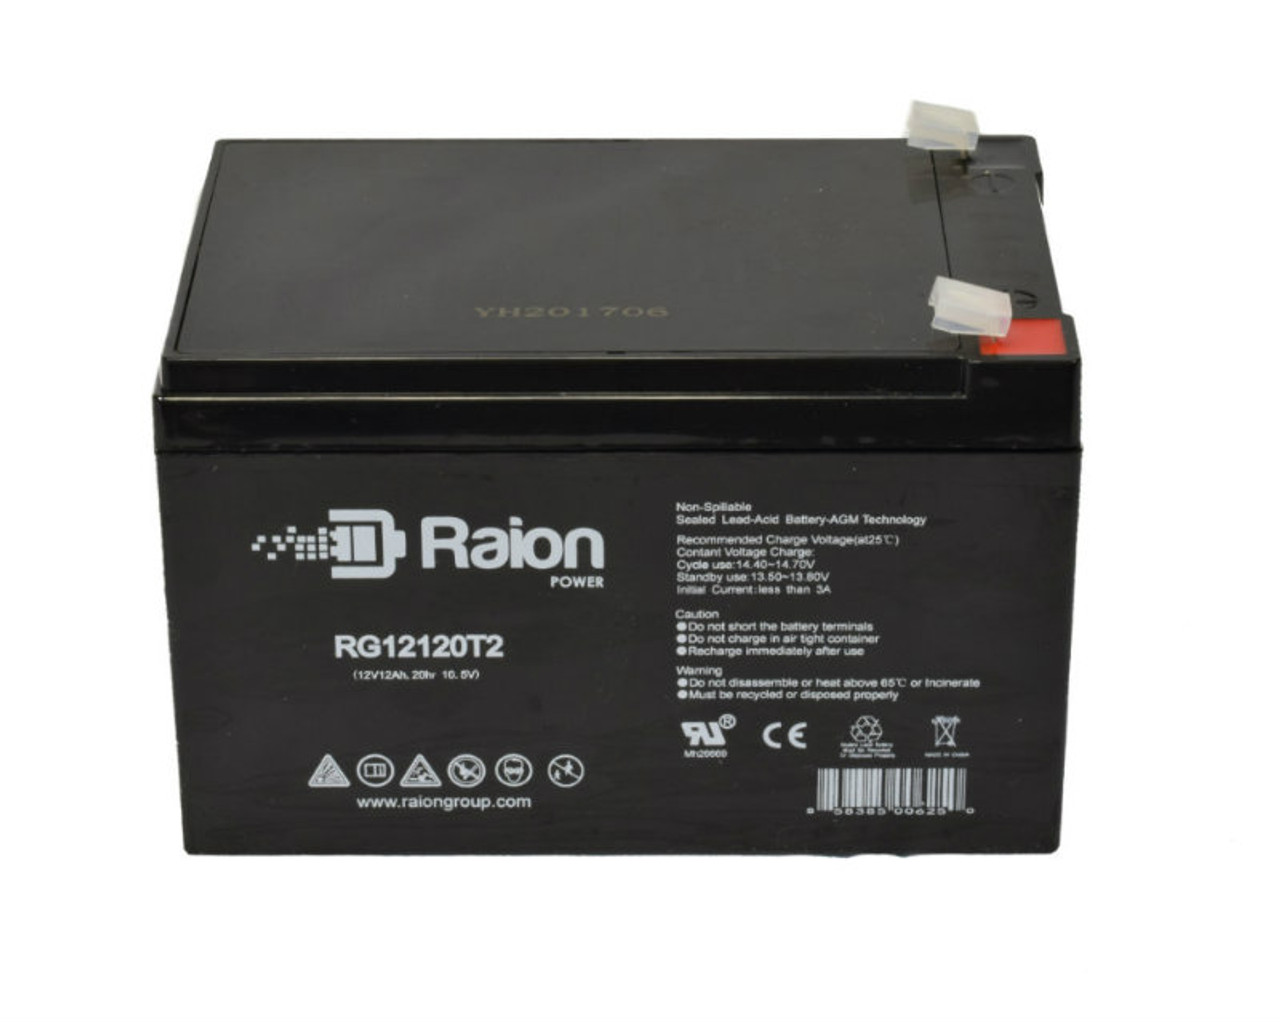 Raion Power RG12120T2 SLA Battery for SLK Power NP10-12